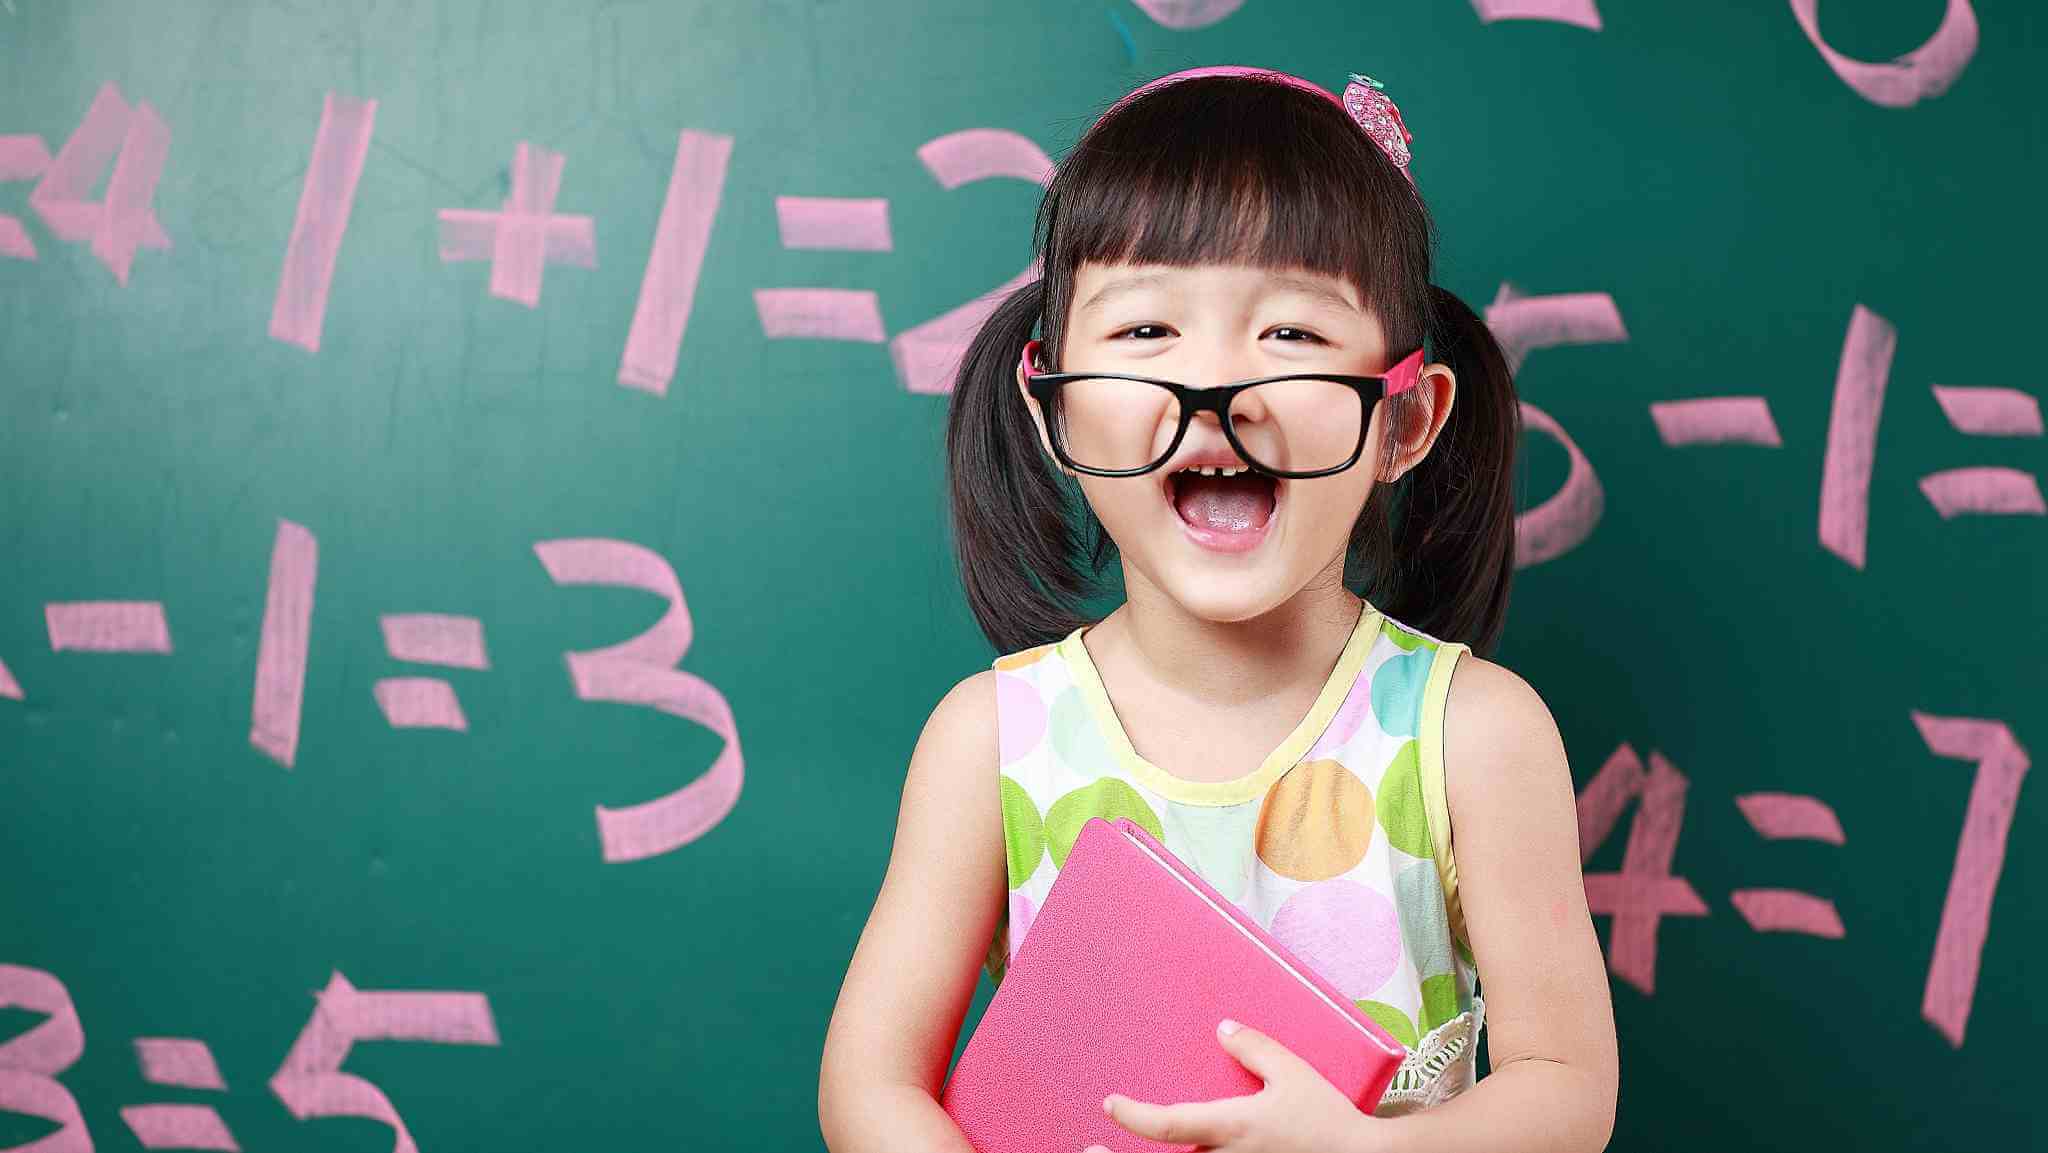 تصویر آموزش اعداد و علامت های ریاضی به کودکان